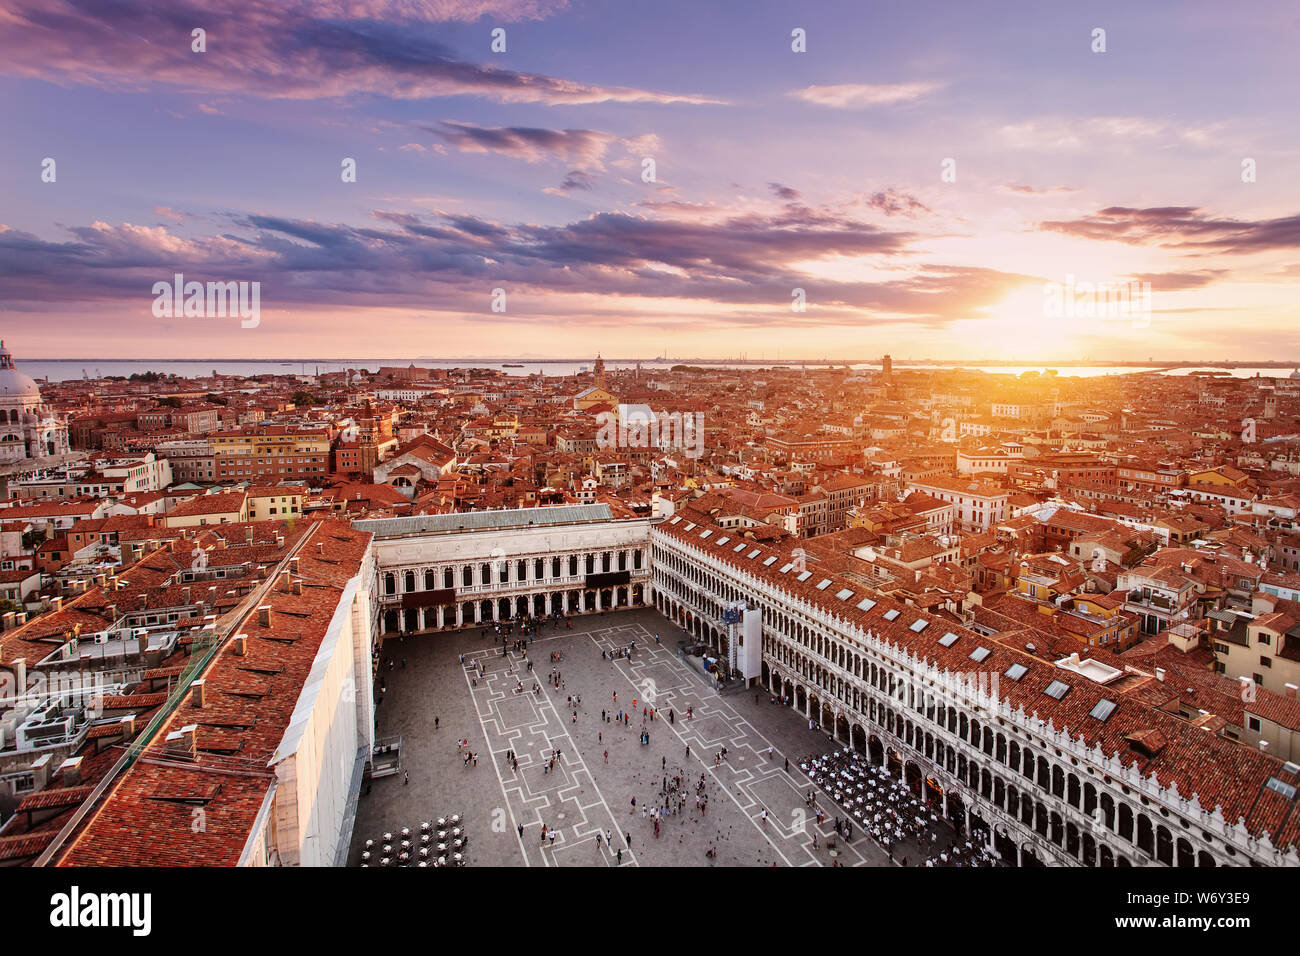 Luftaufnahme von Venedig mit dem San Marco Platz und Wohnungen bei Sonnenuntergang. Venedig, Italien. Stockfoto